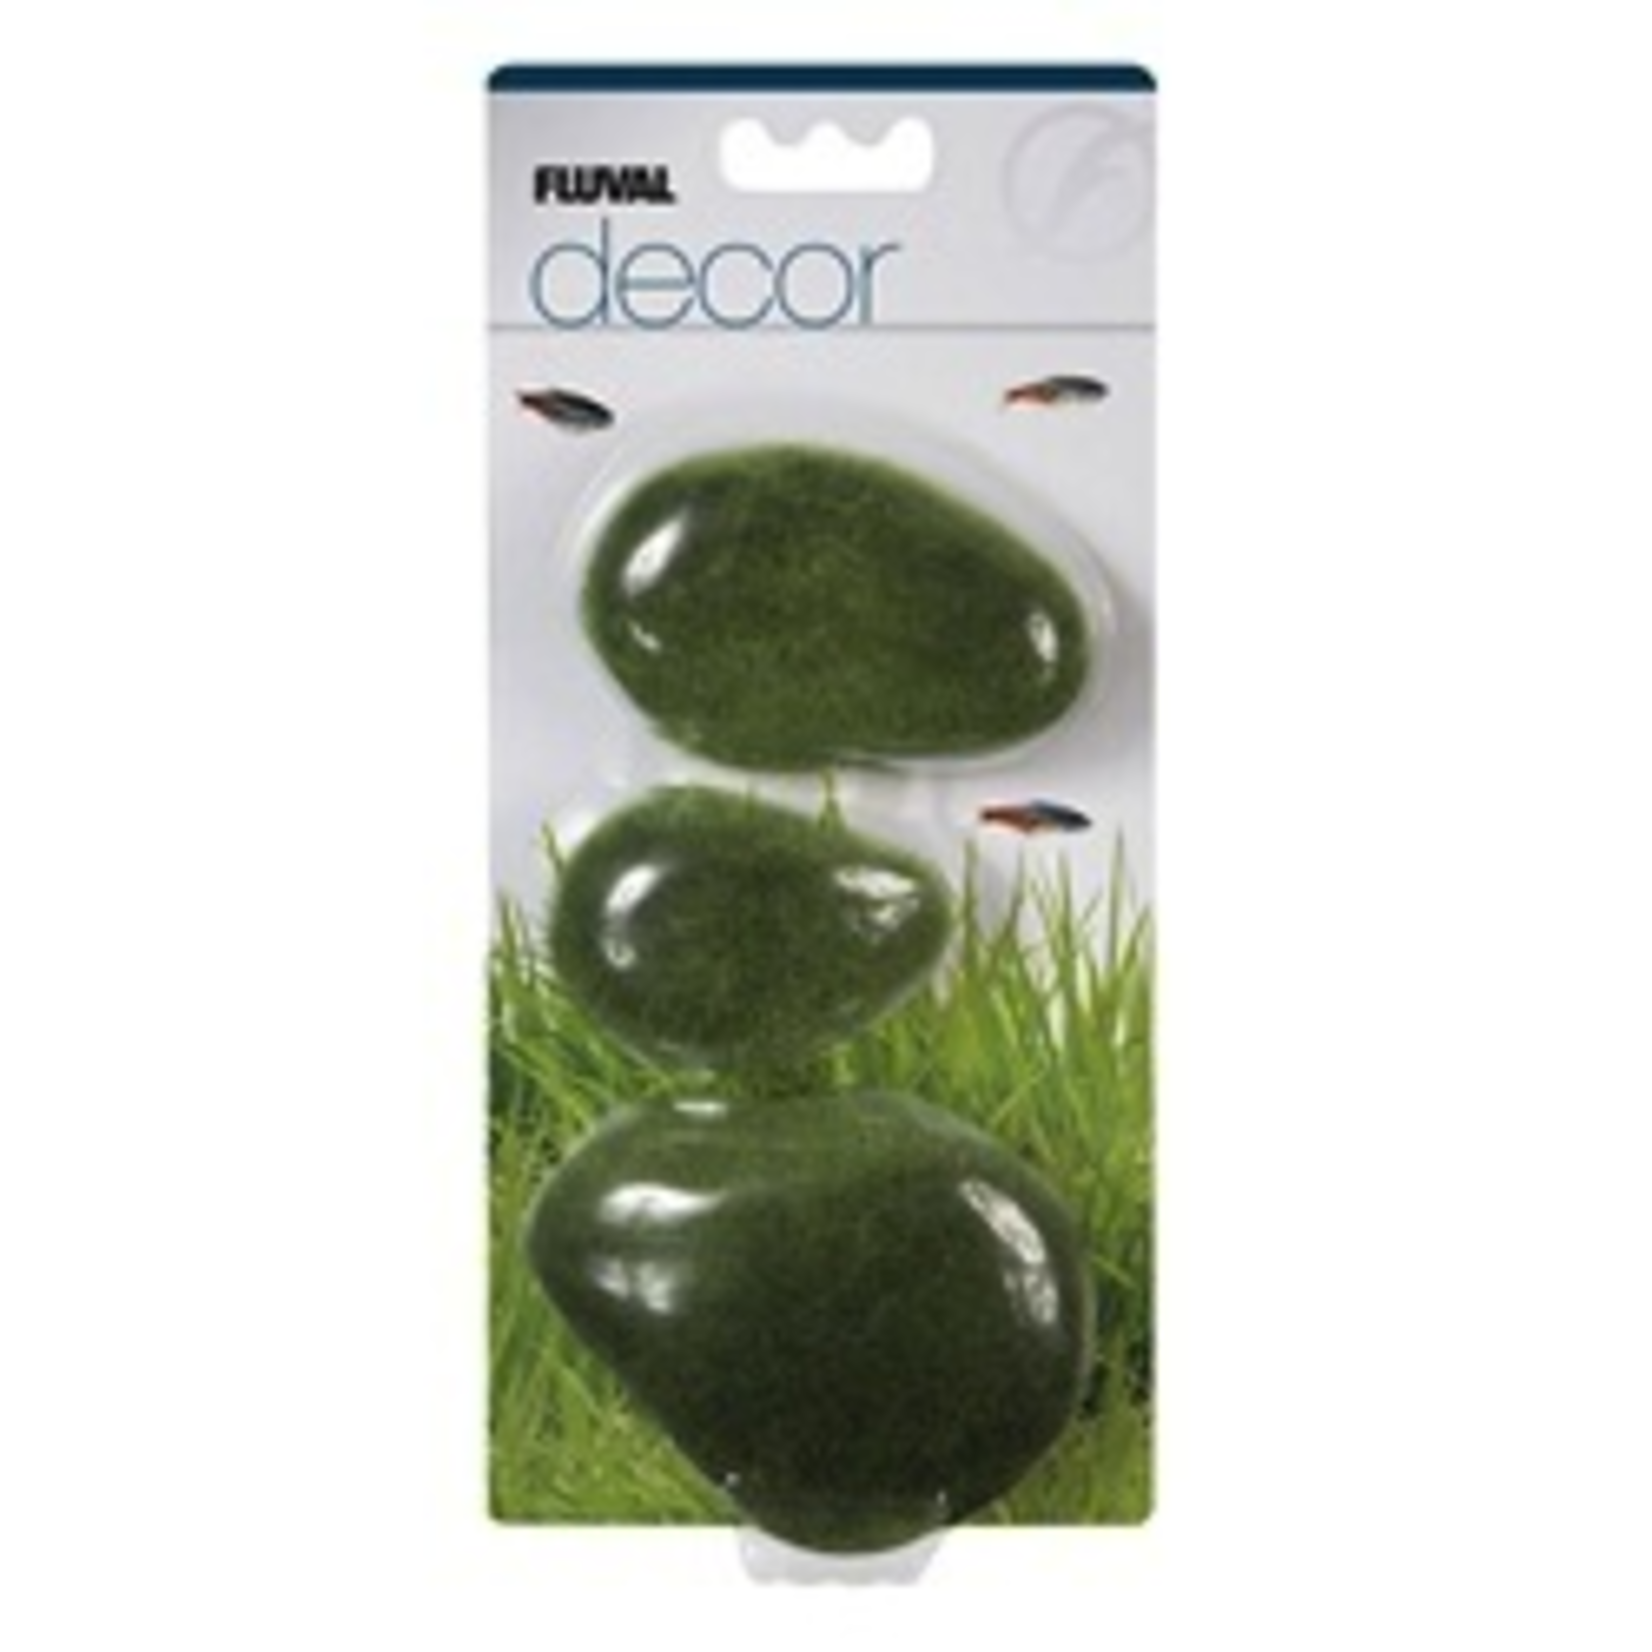 FLUVAL (D) Fluval Decor - Moss Stones - Large